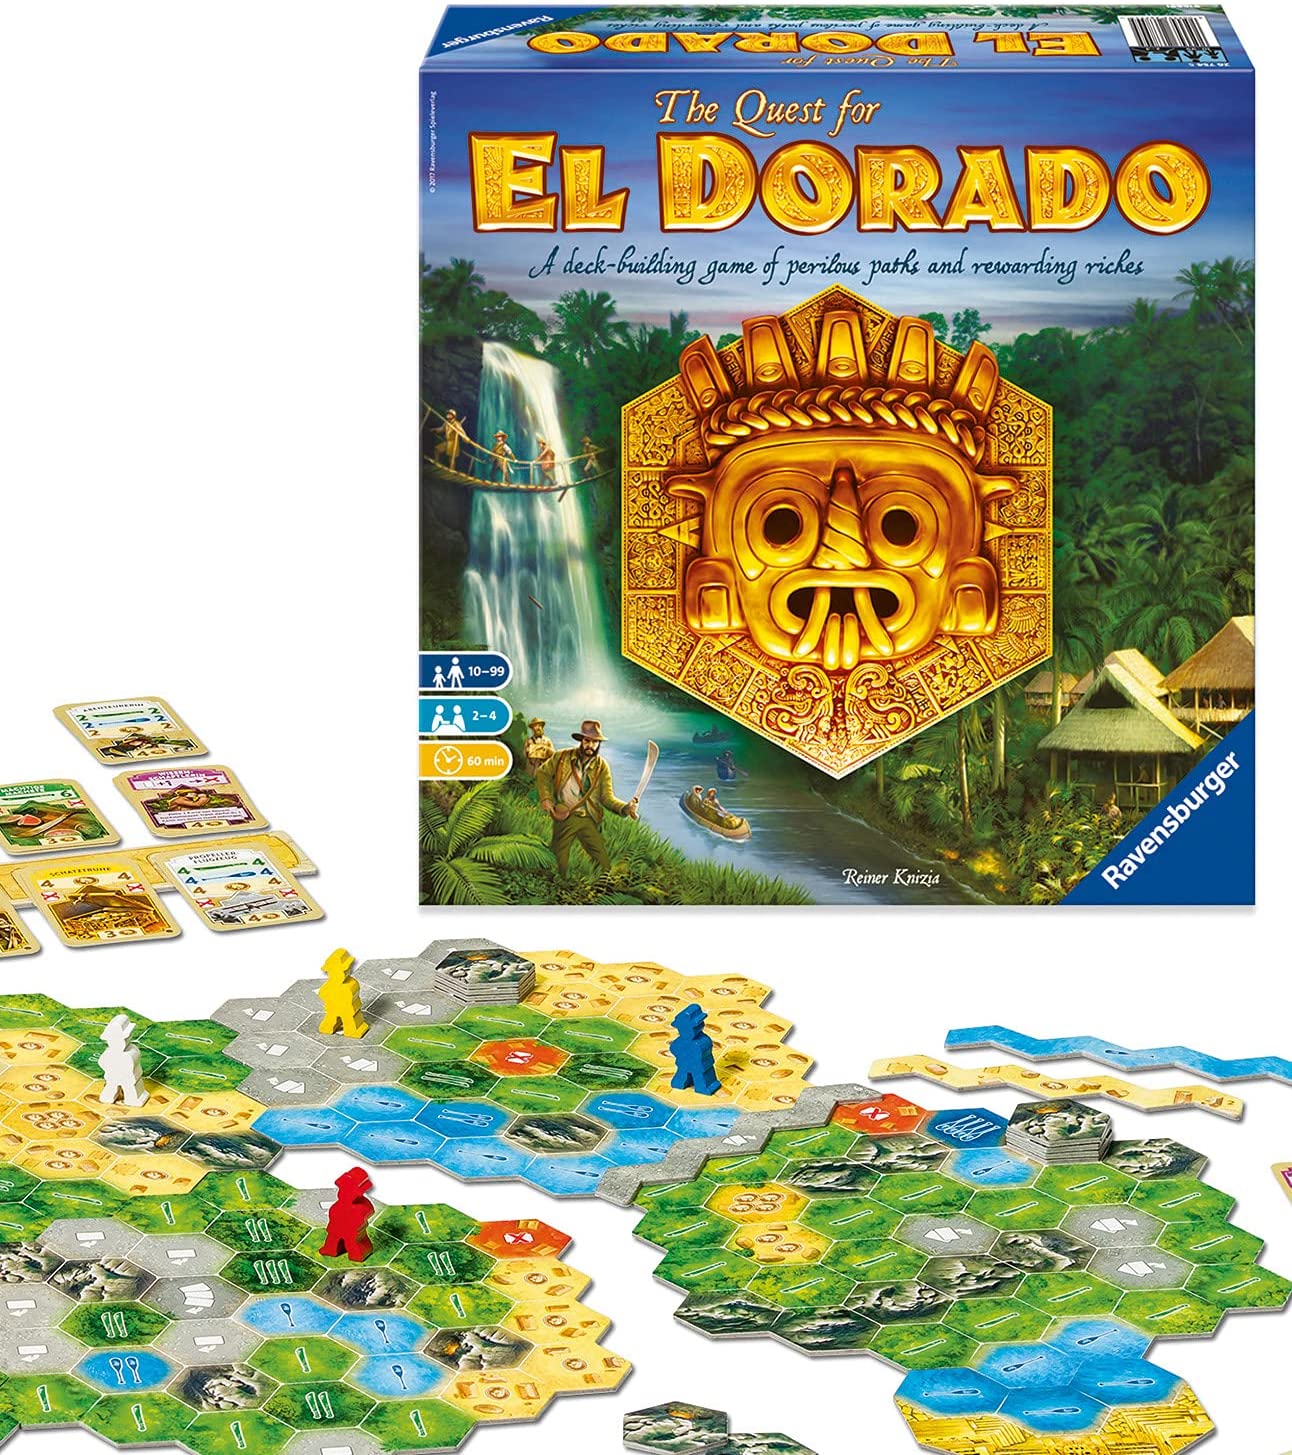 Where to buy The Quest for El Dorado